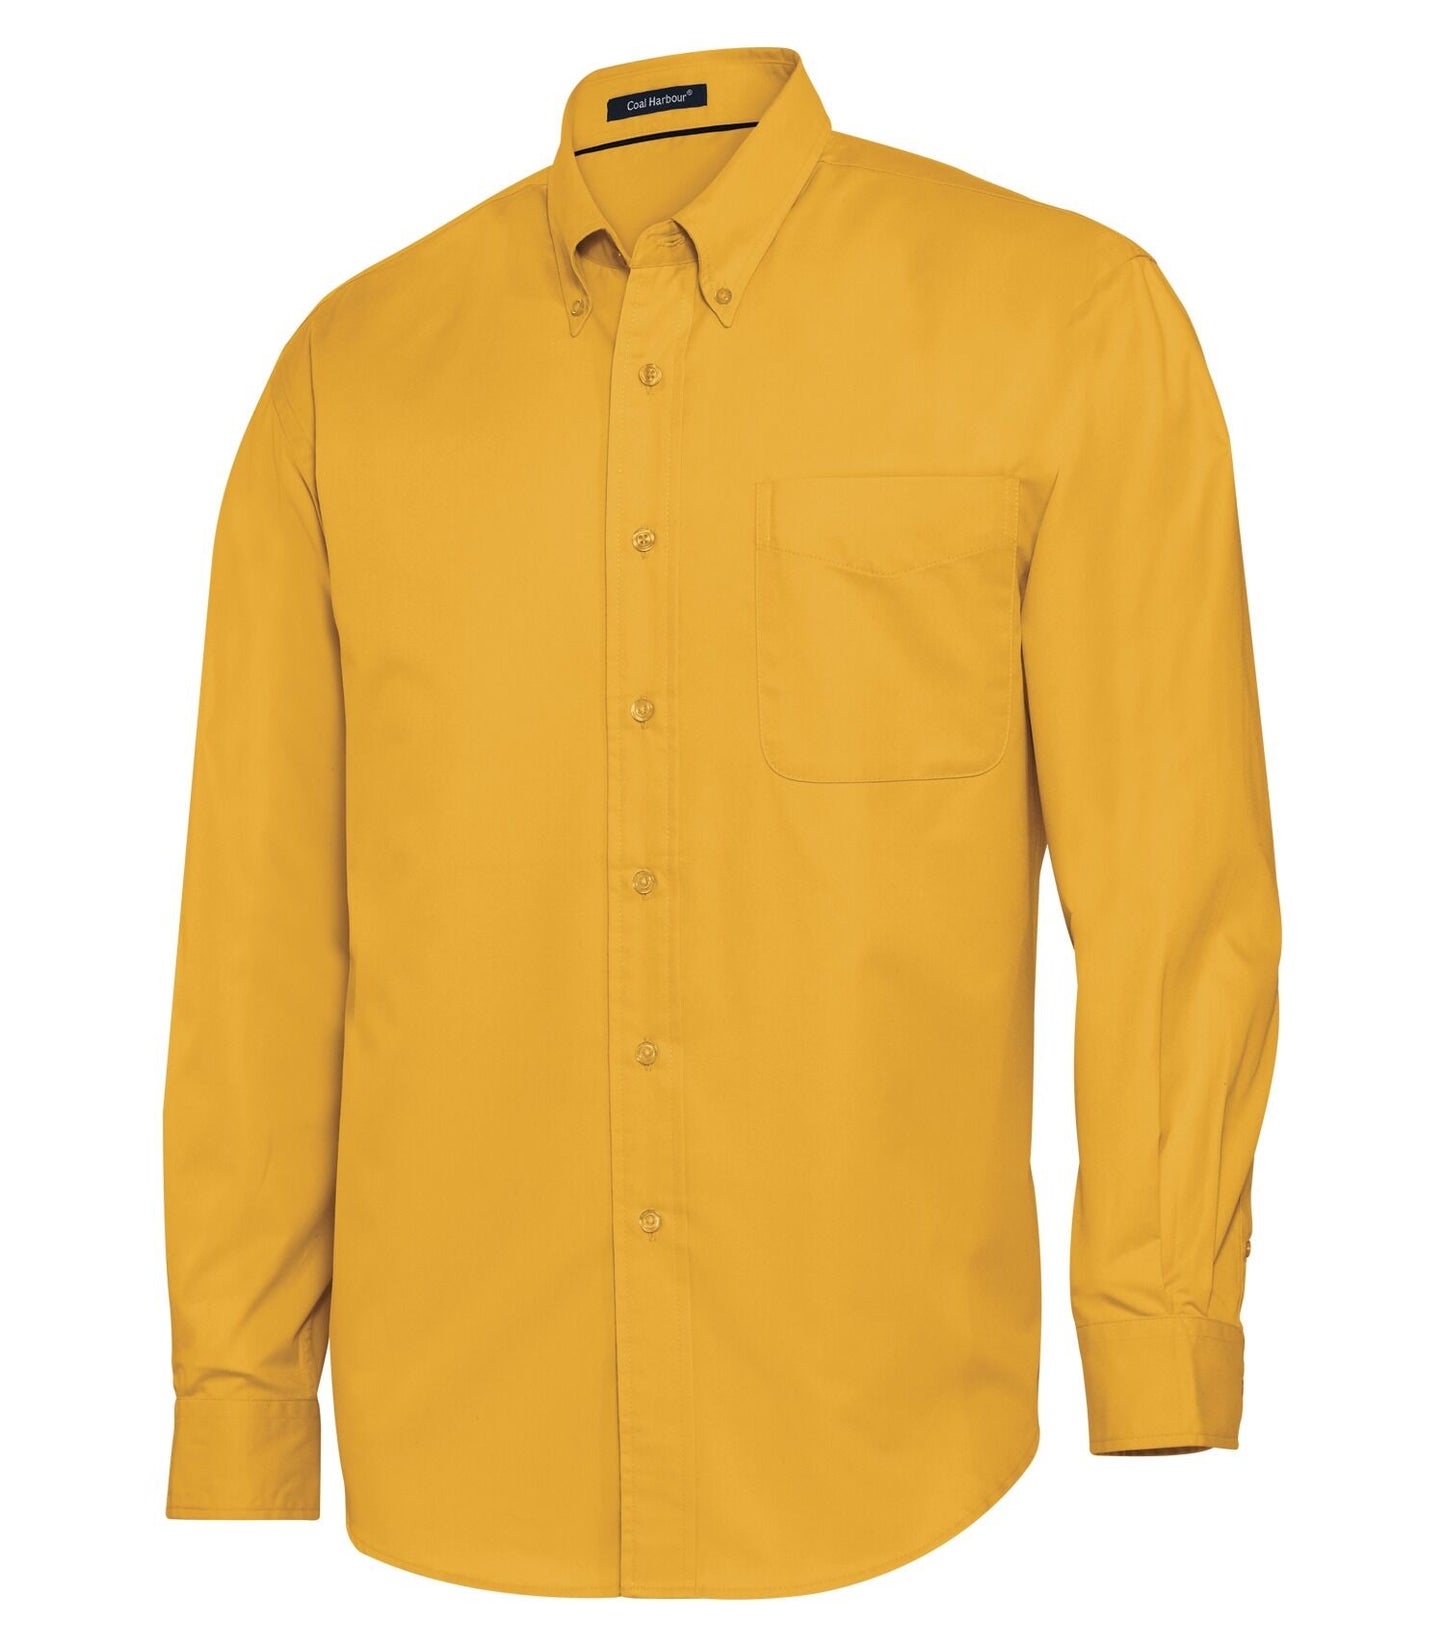 Camisa tejida de manga larga Harbor-D610 de carbón para hombres